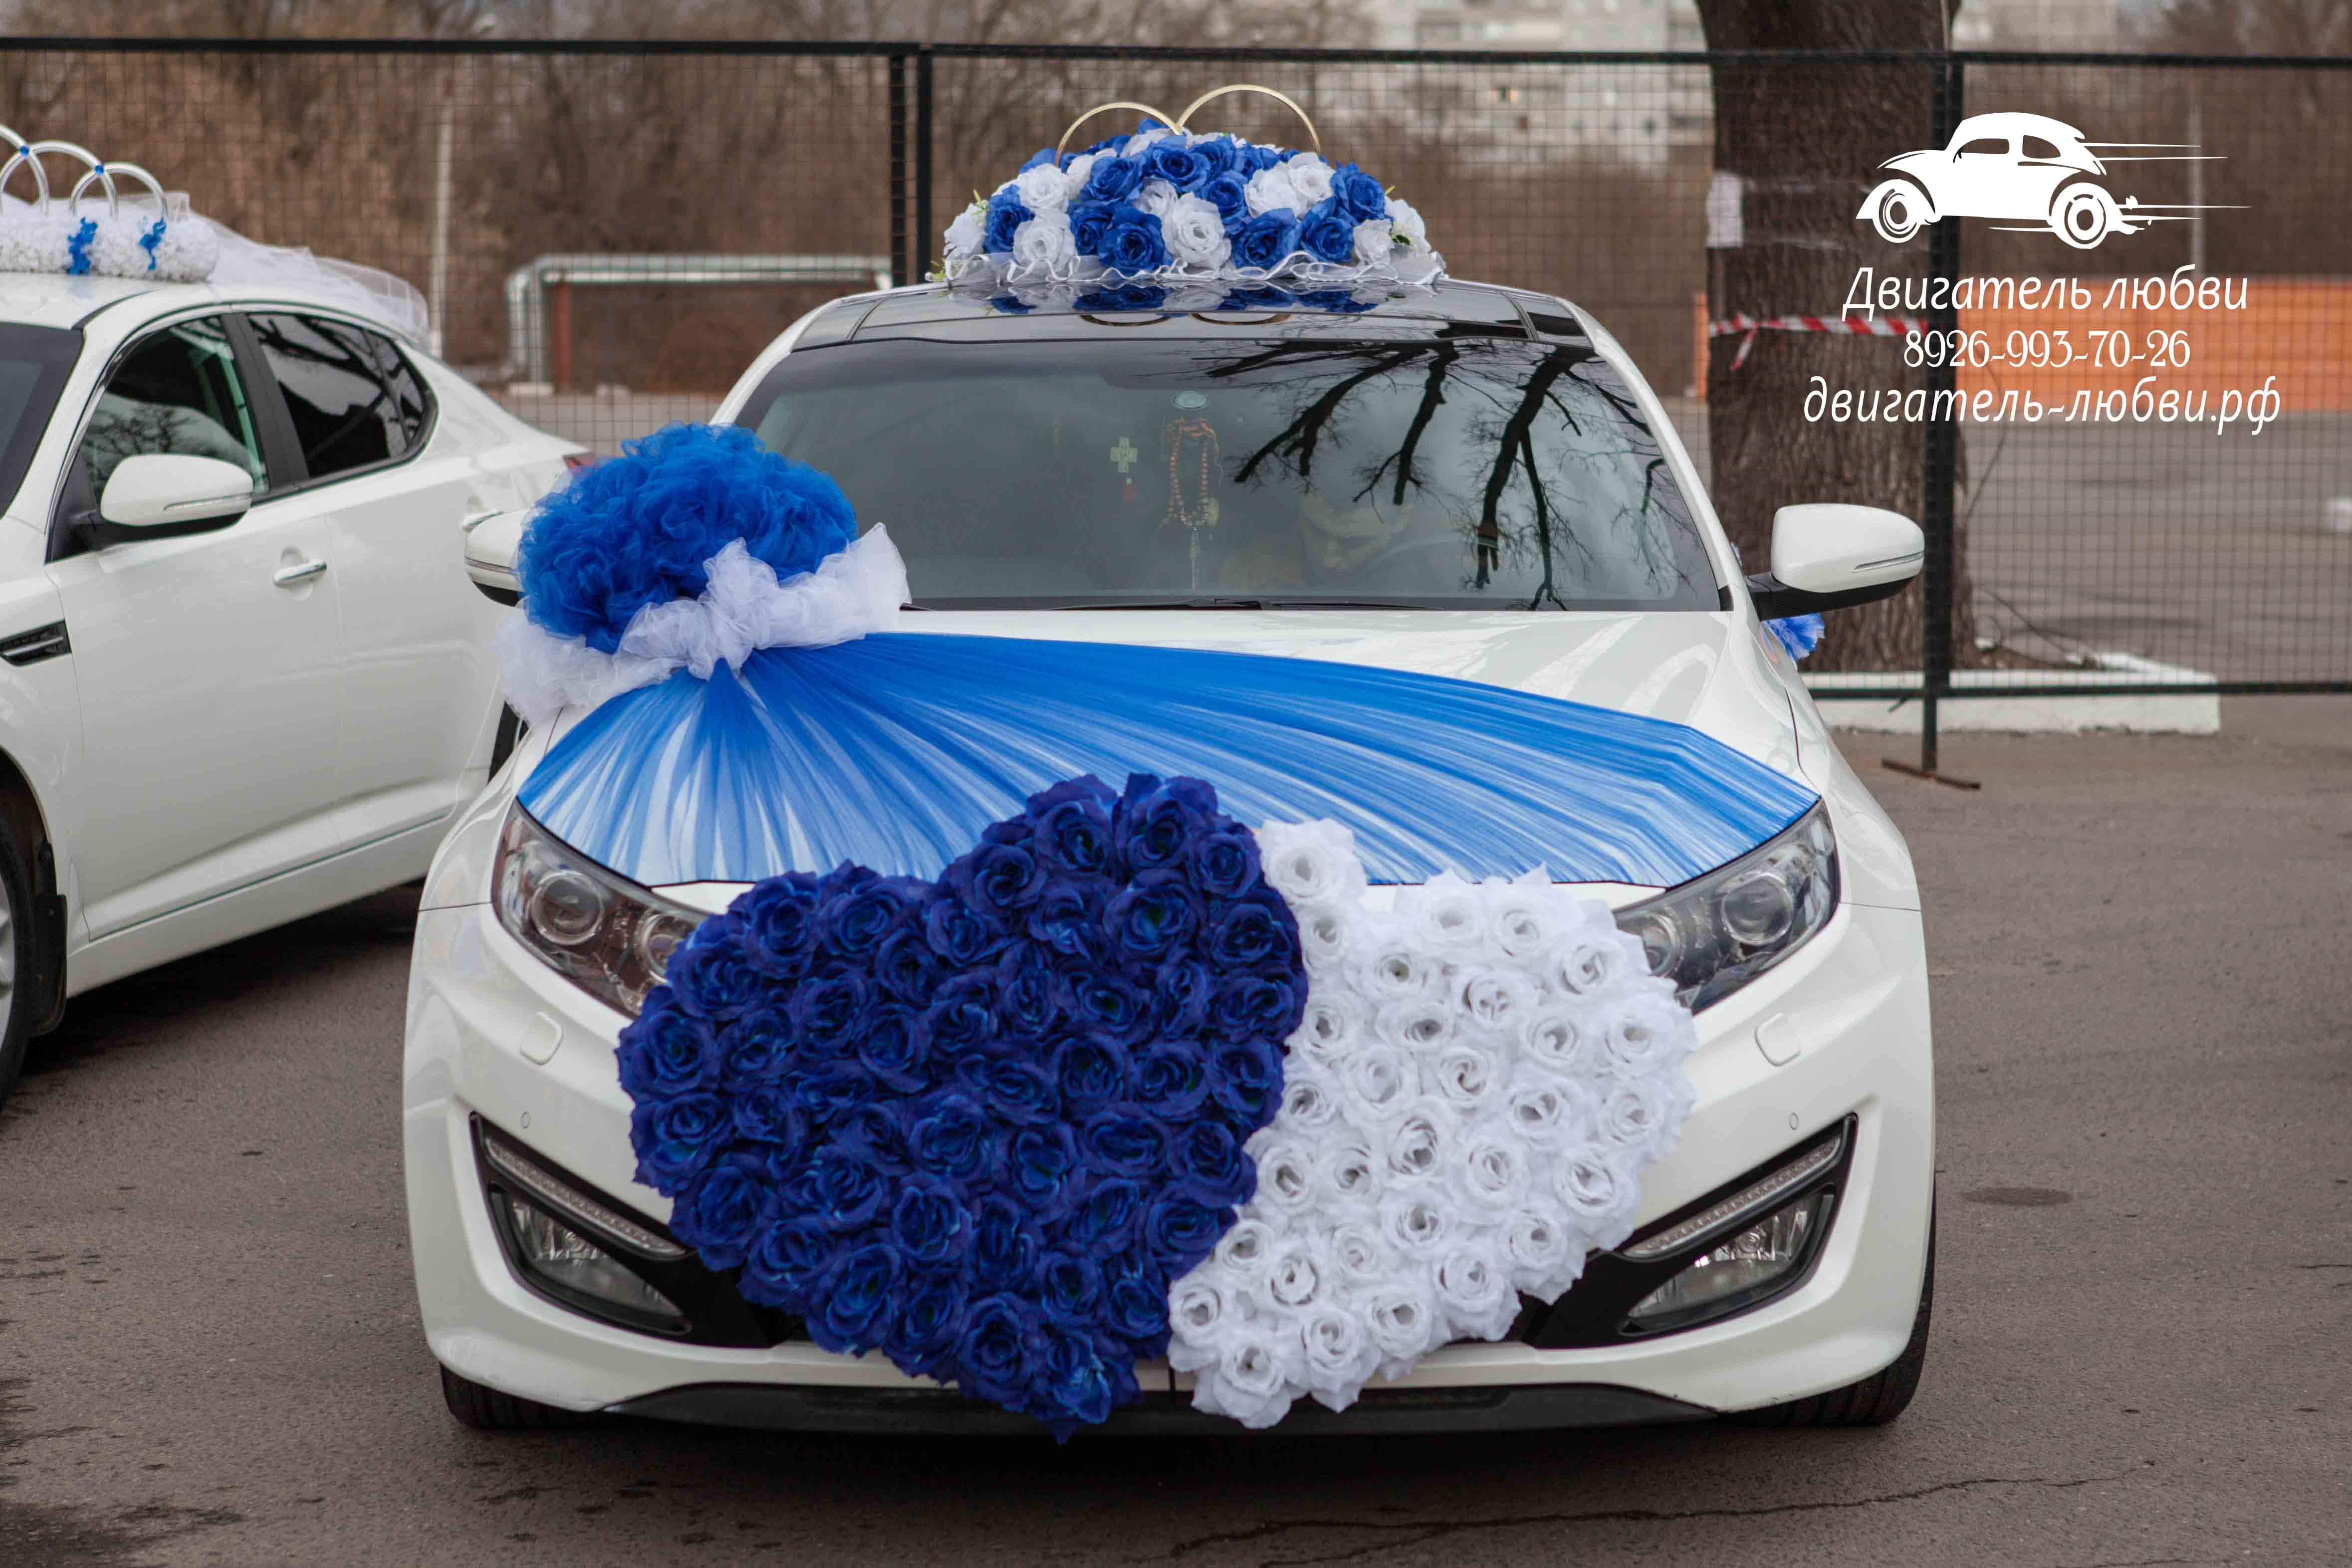 Сердца на машину для свадьбы в голубом цвете